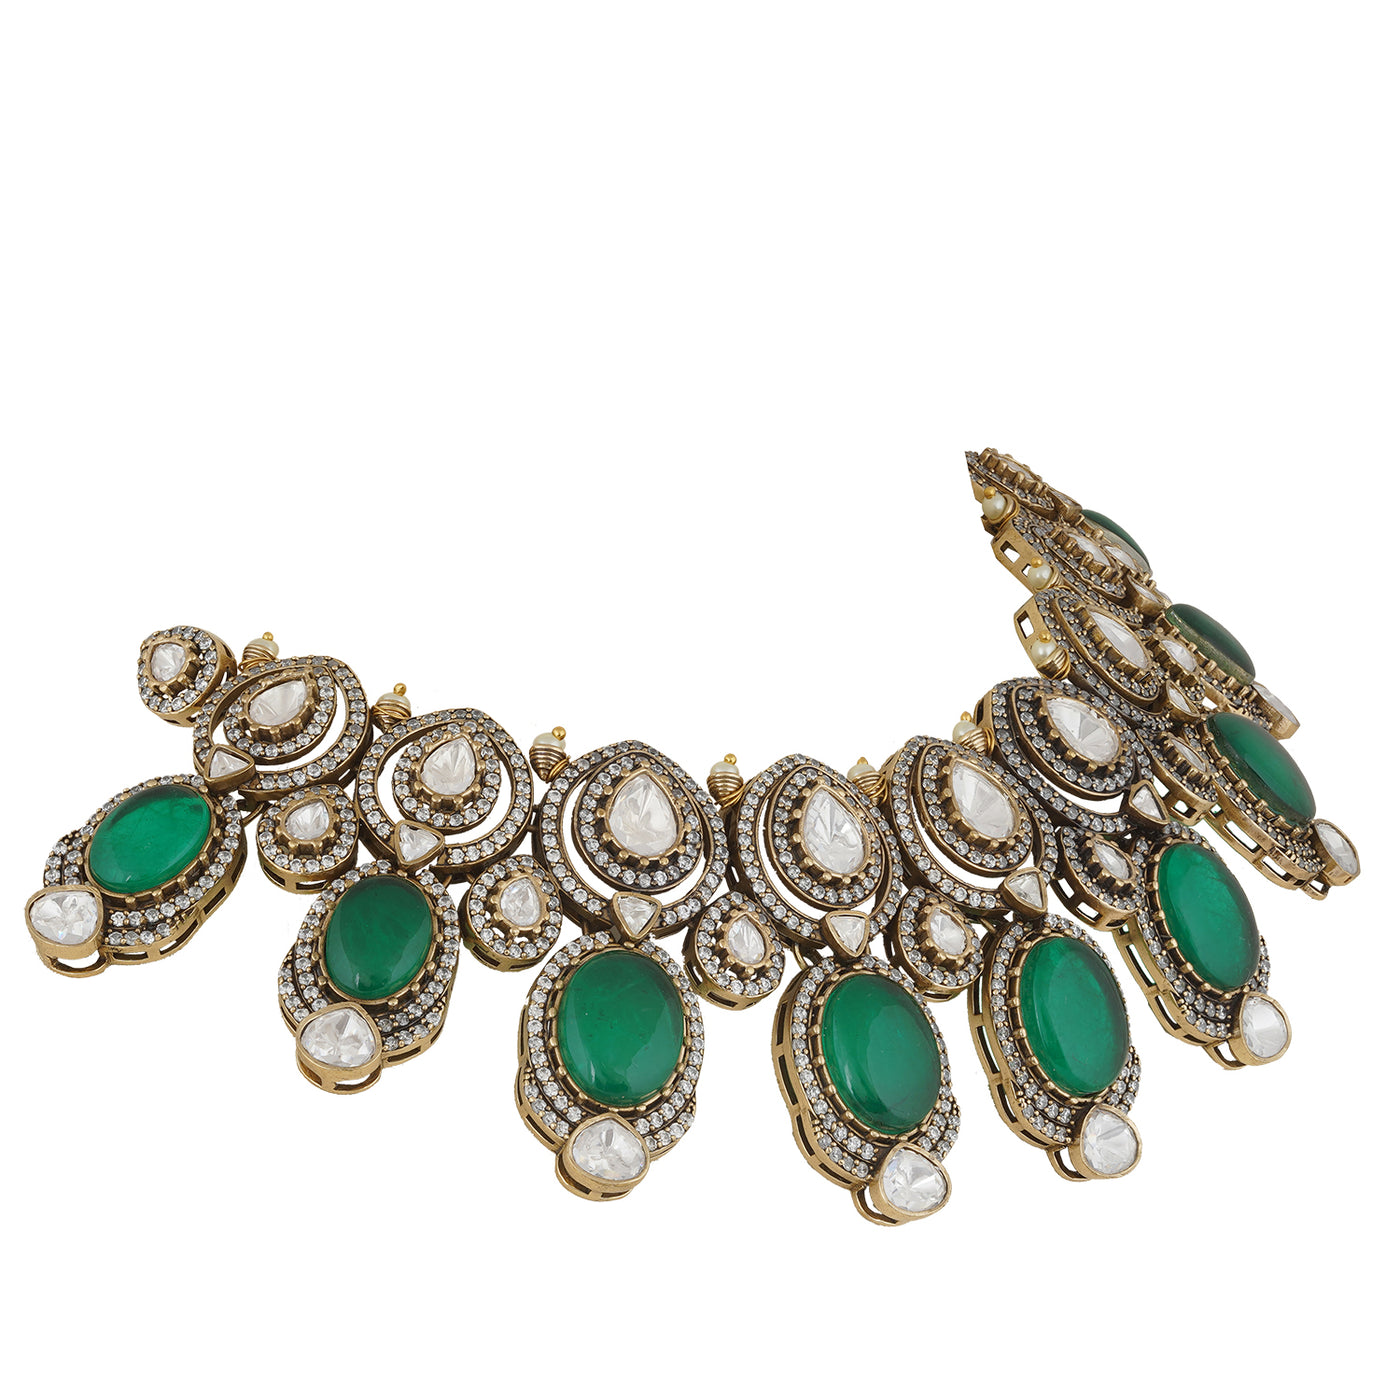 Ashika - Green stone polki necklace set